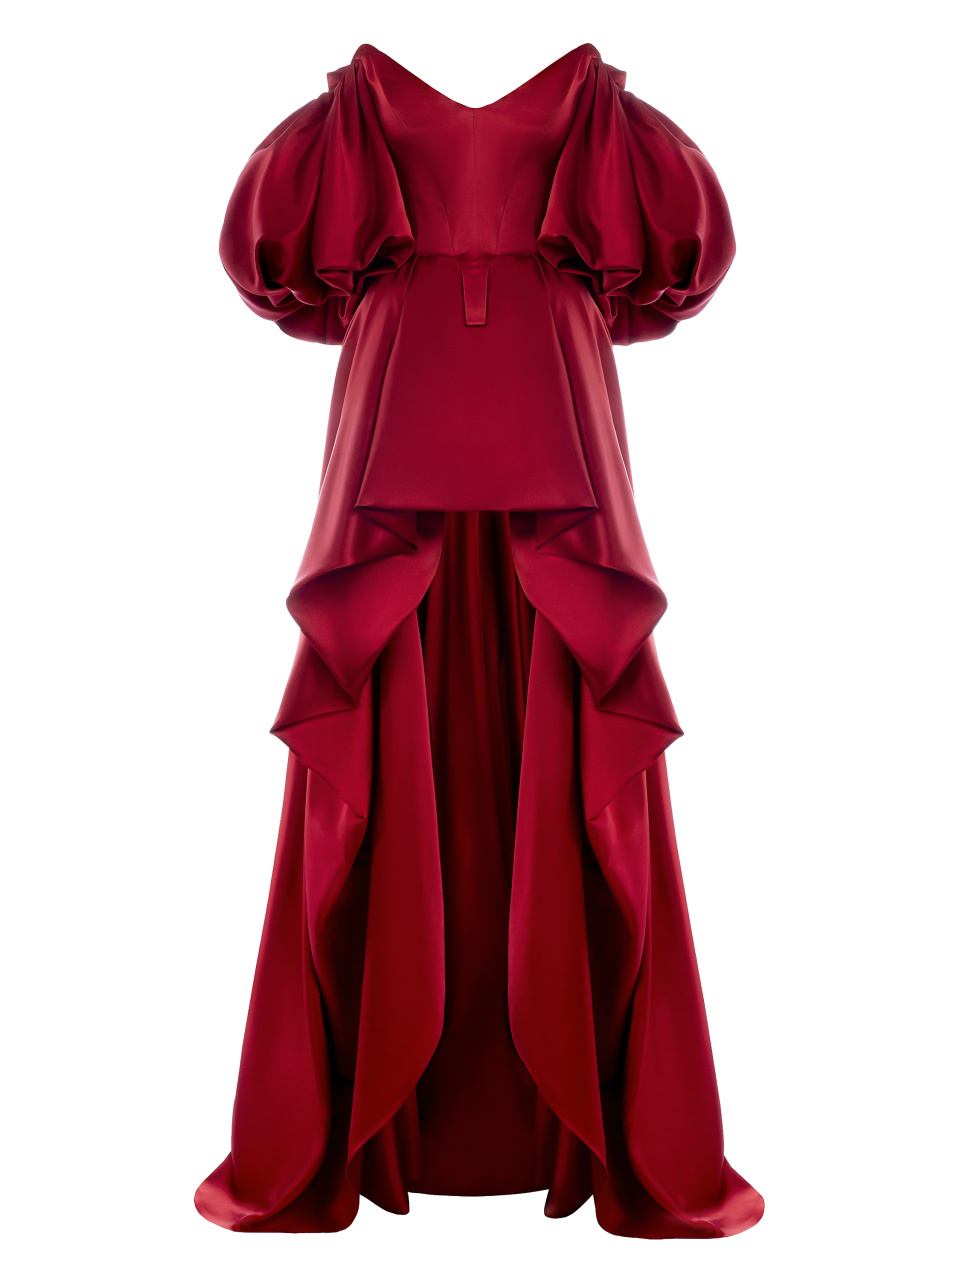 Платье из красной тафты со шлейфом, 1